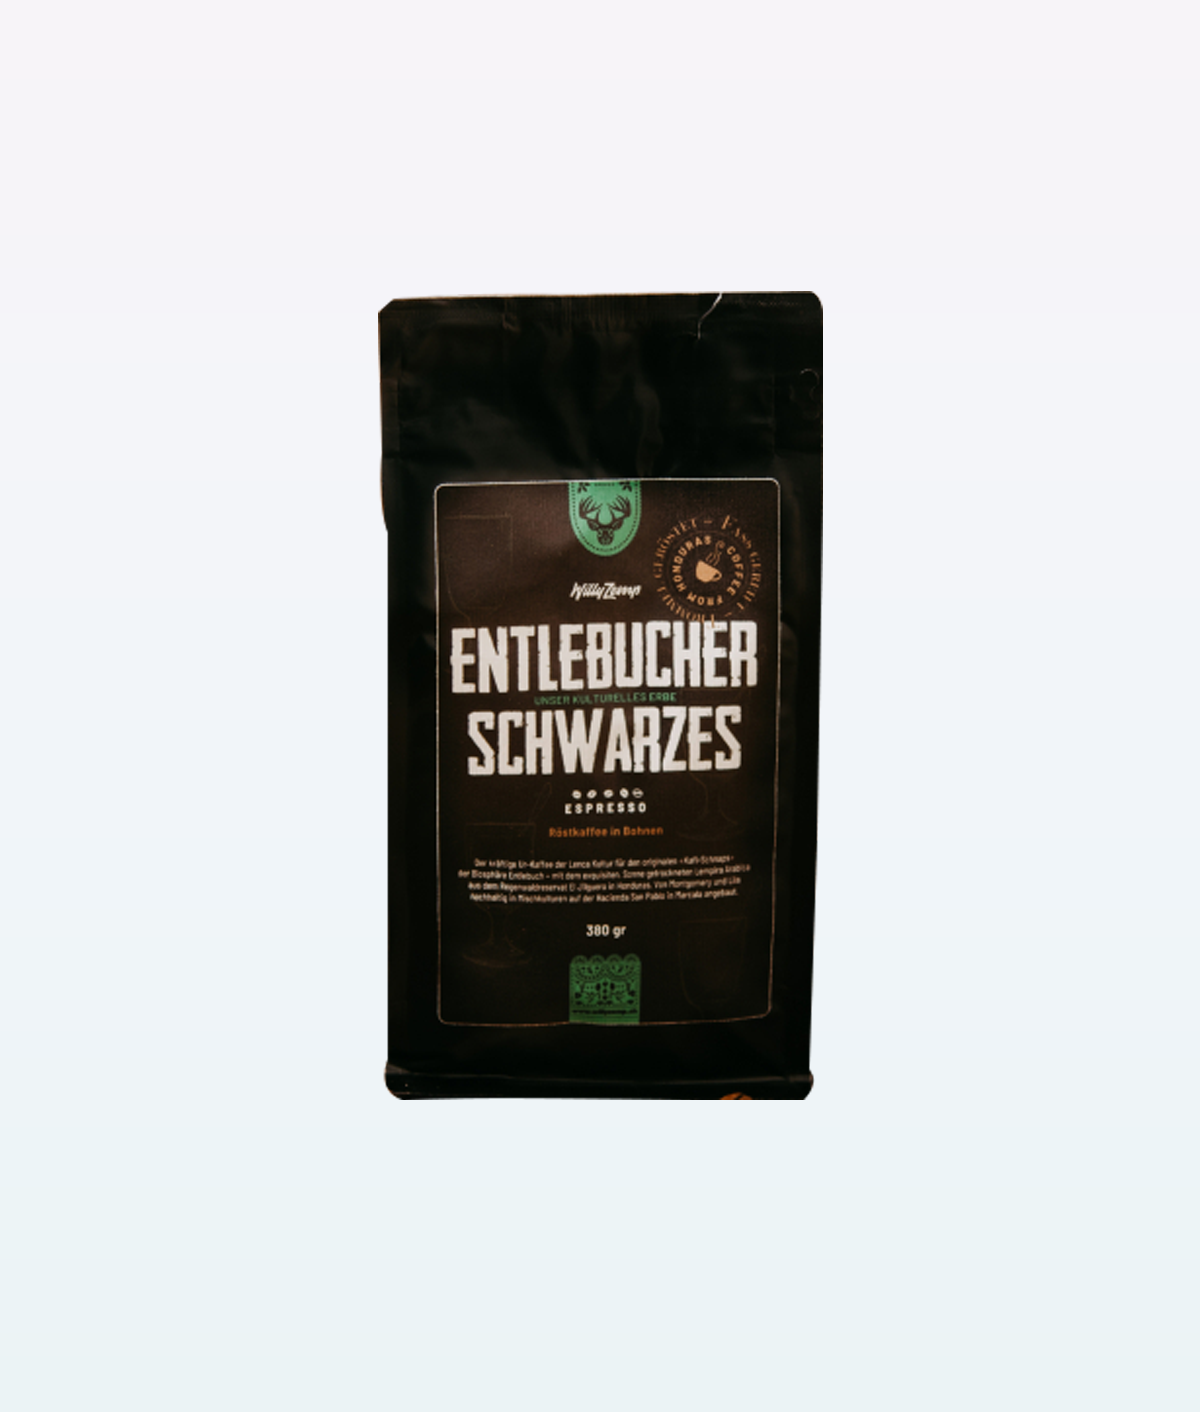 Entlebucher Schwarzes Espresso Coffee Beans 380 g